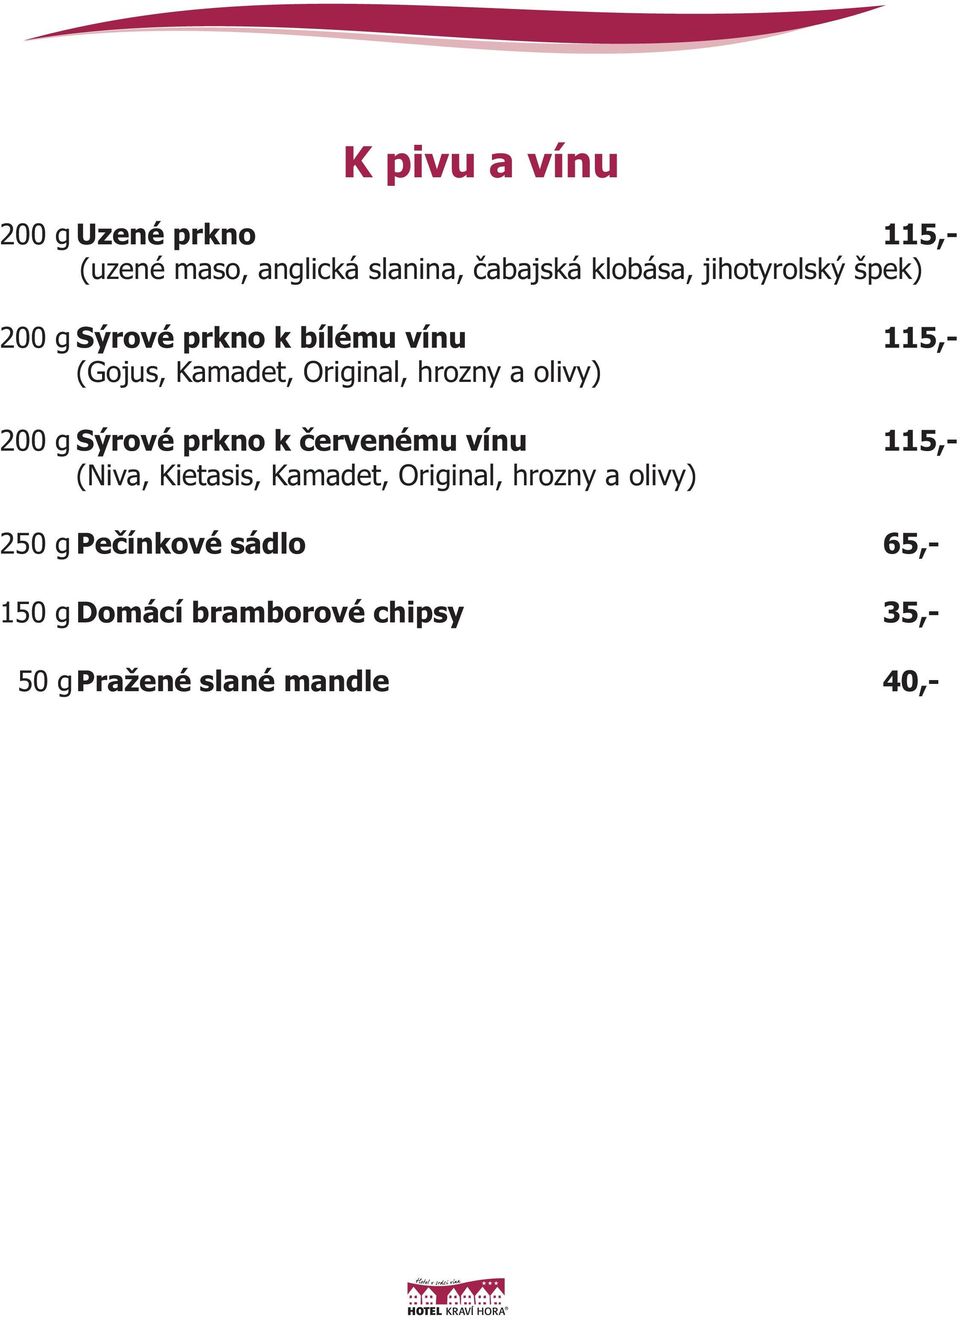 olivy) 200 g Sýrové prkno k červenému vínu 115,- (Niva, Kietasis, Kamadet, Original, hrozny a